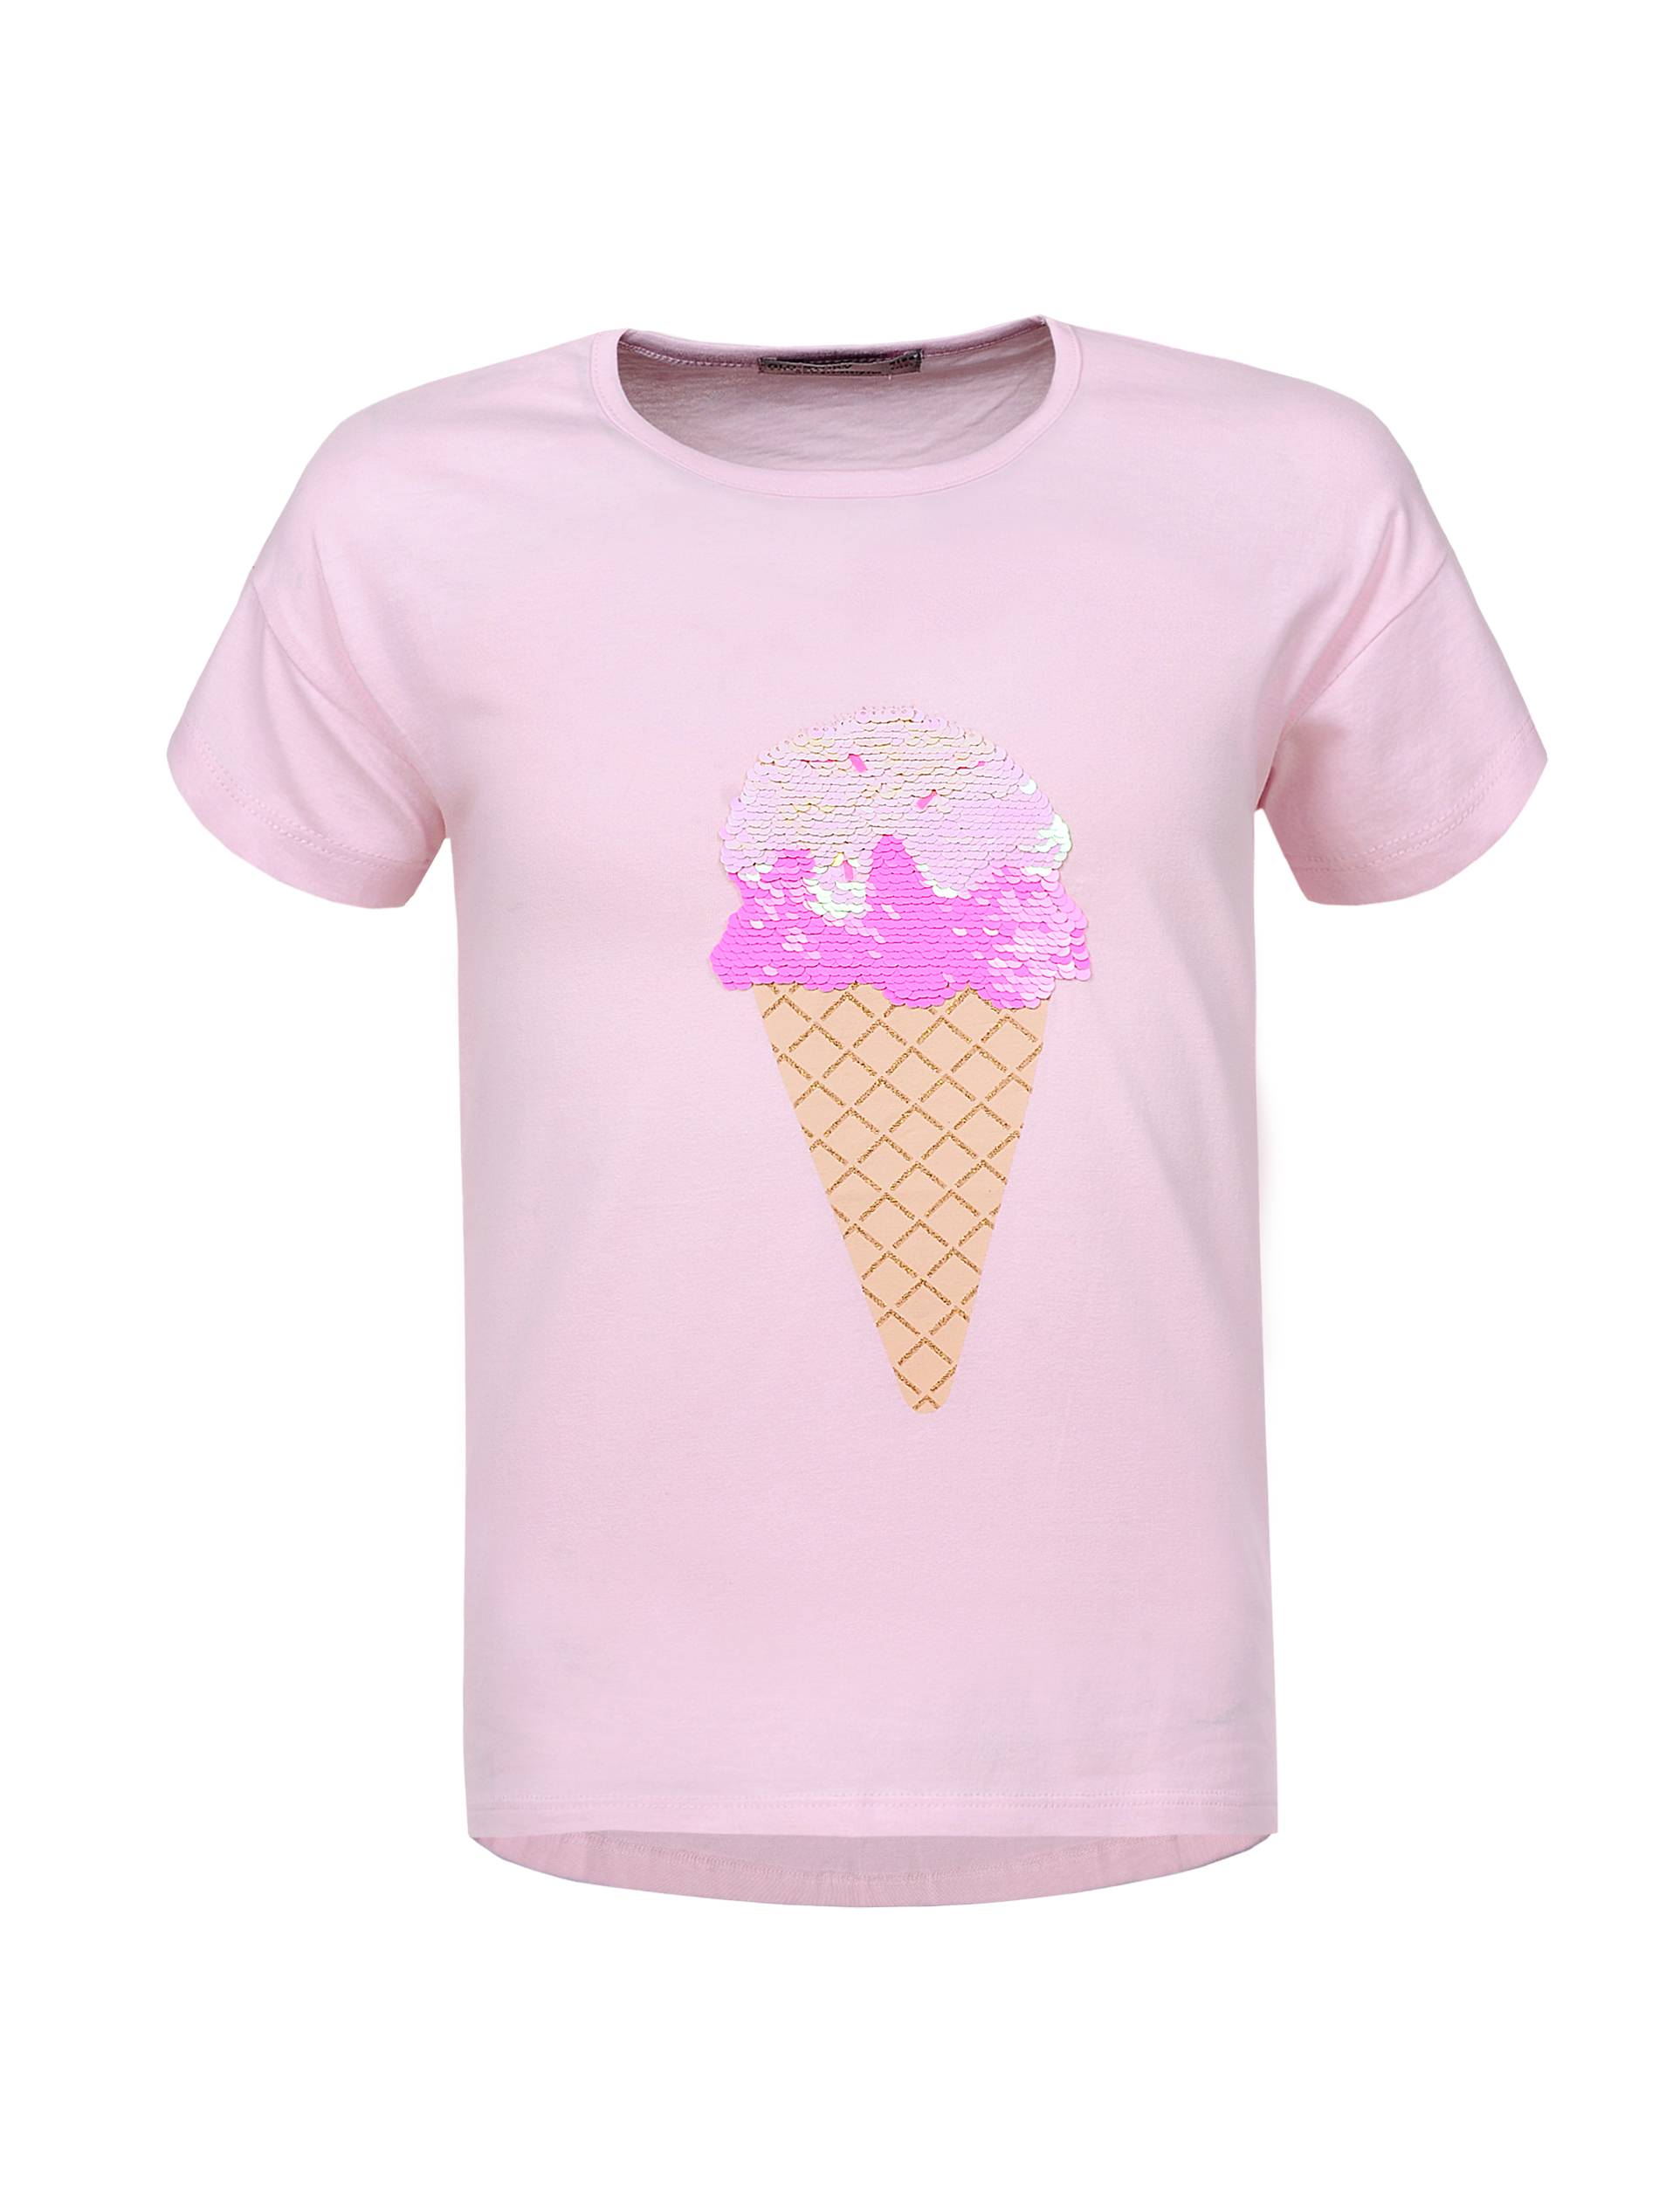 Dívčí triko s flitry - Glo-Story GPO-0469, světlonce růžová Barva: Růžová, Velikost: 98